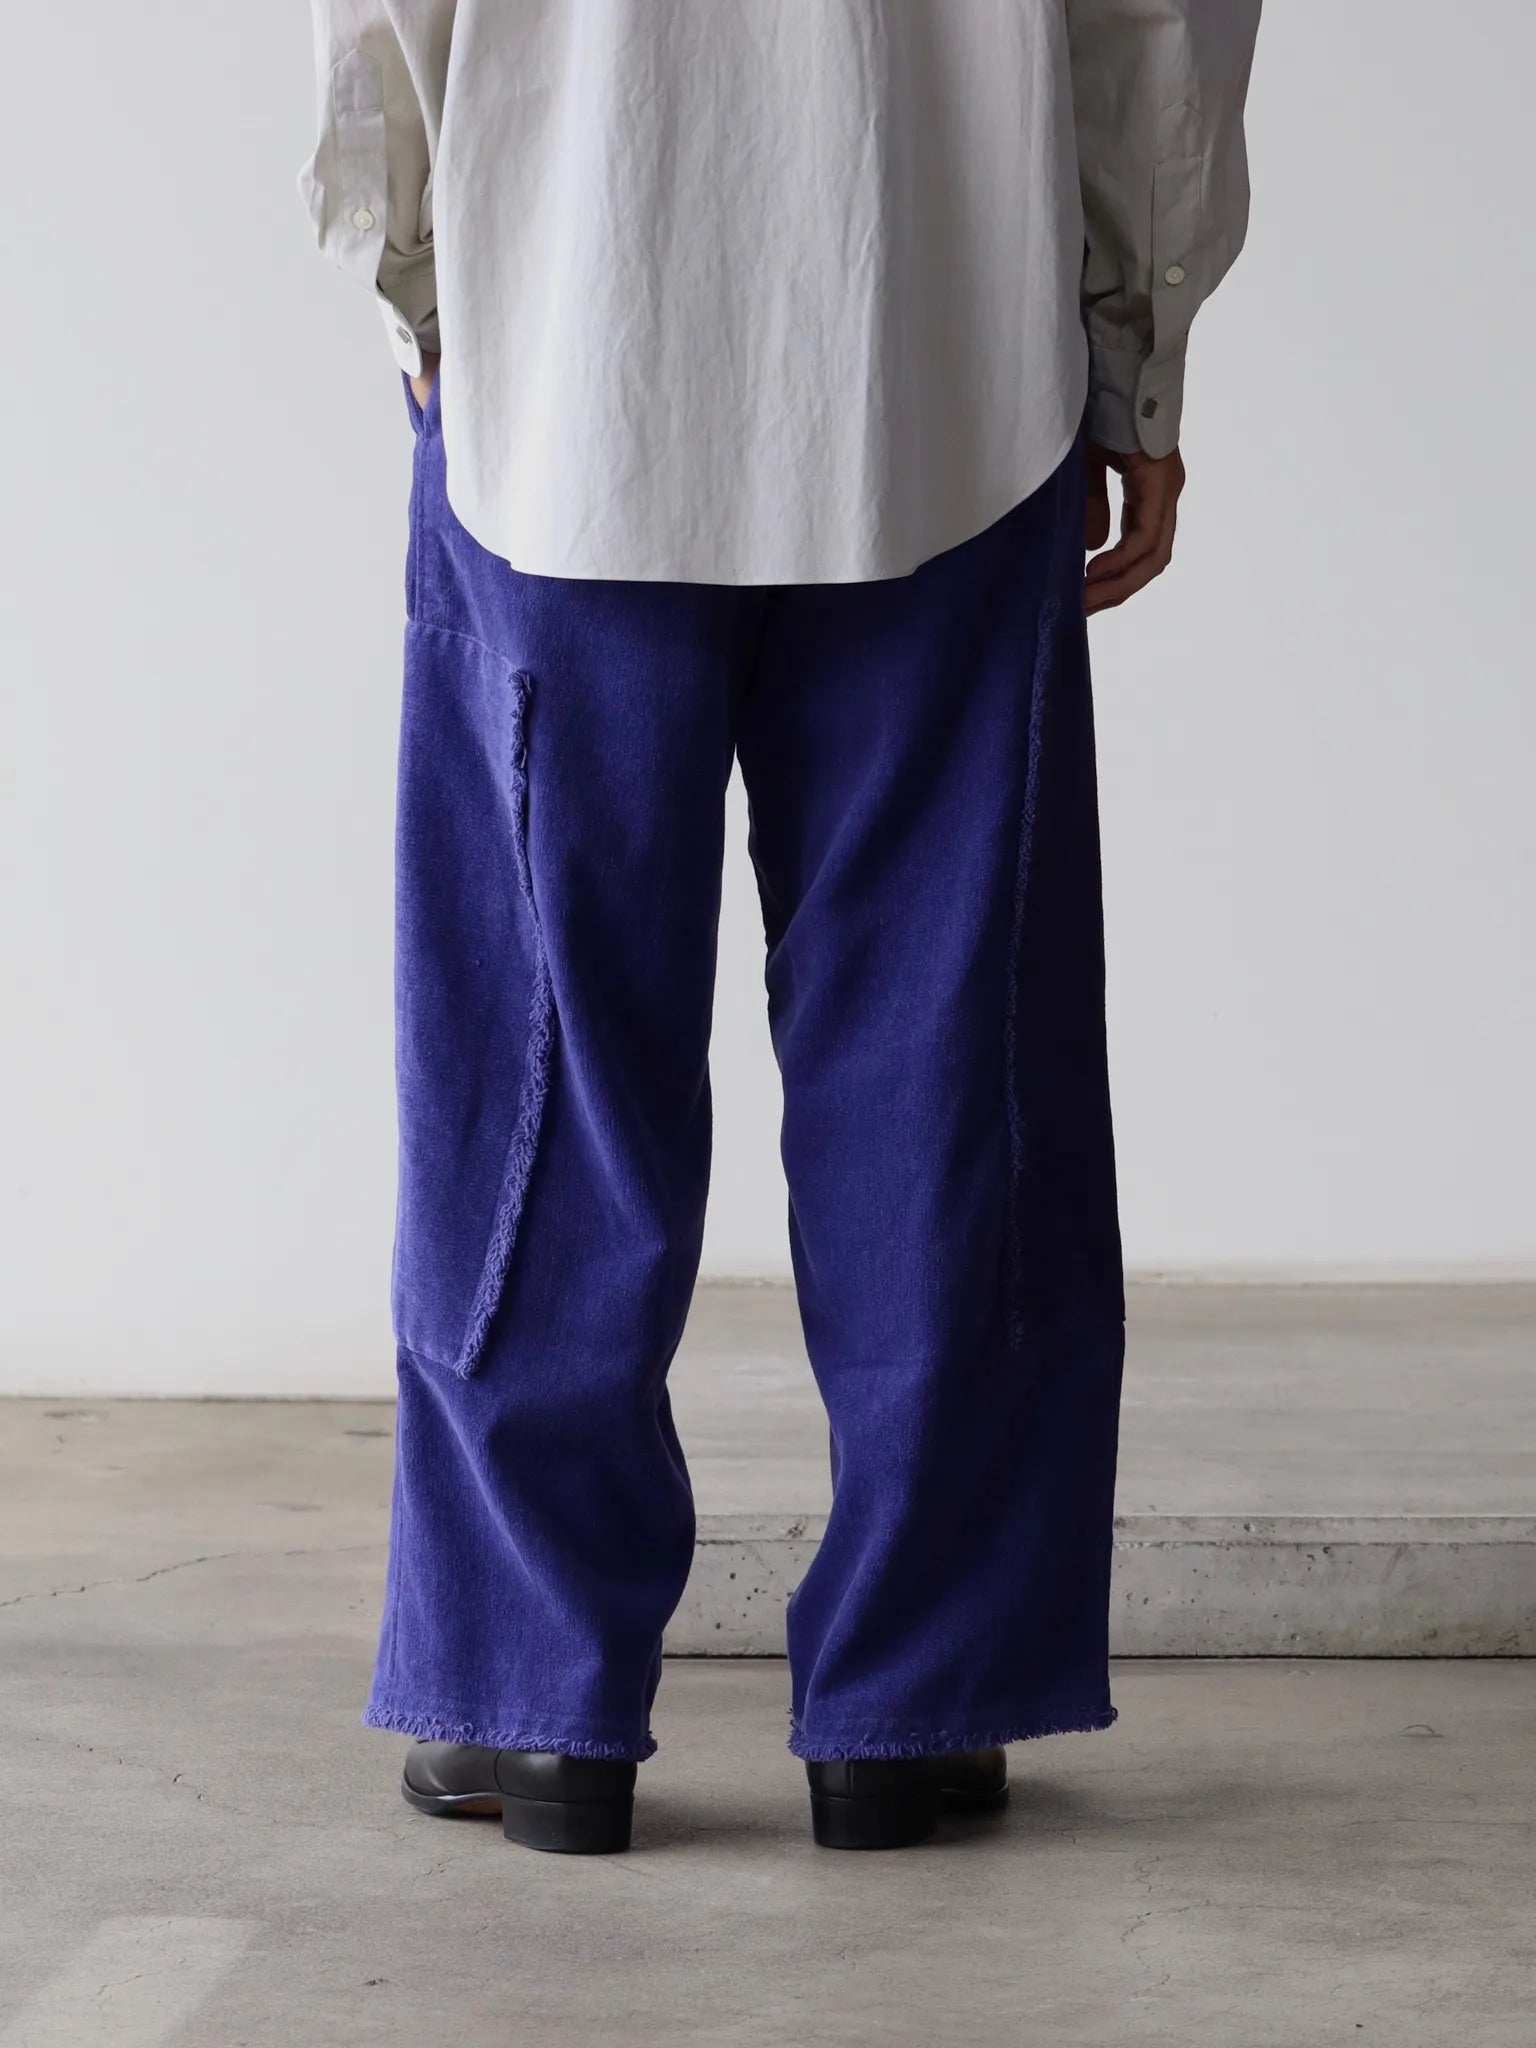 amachi-frost-pants-blue-purple-5